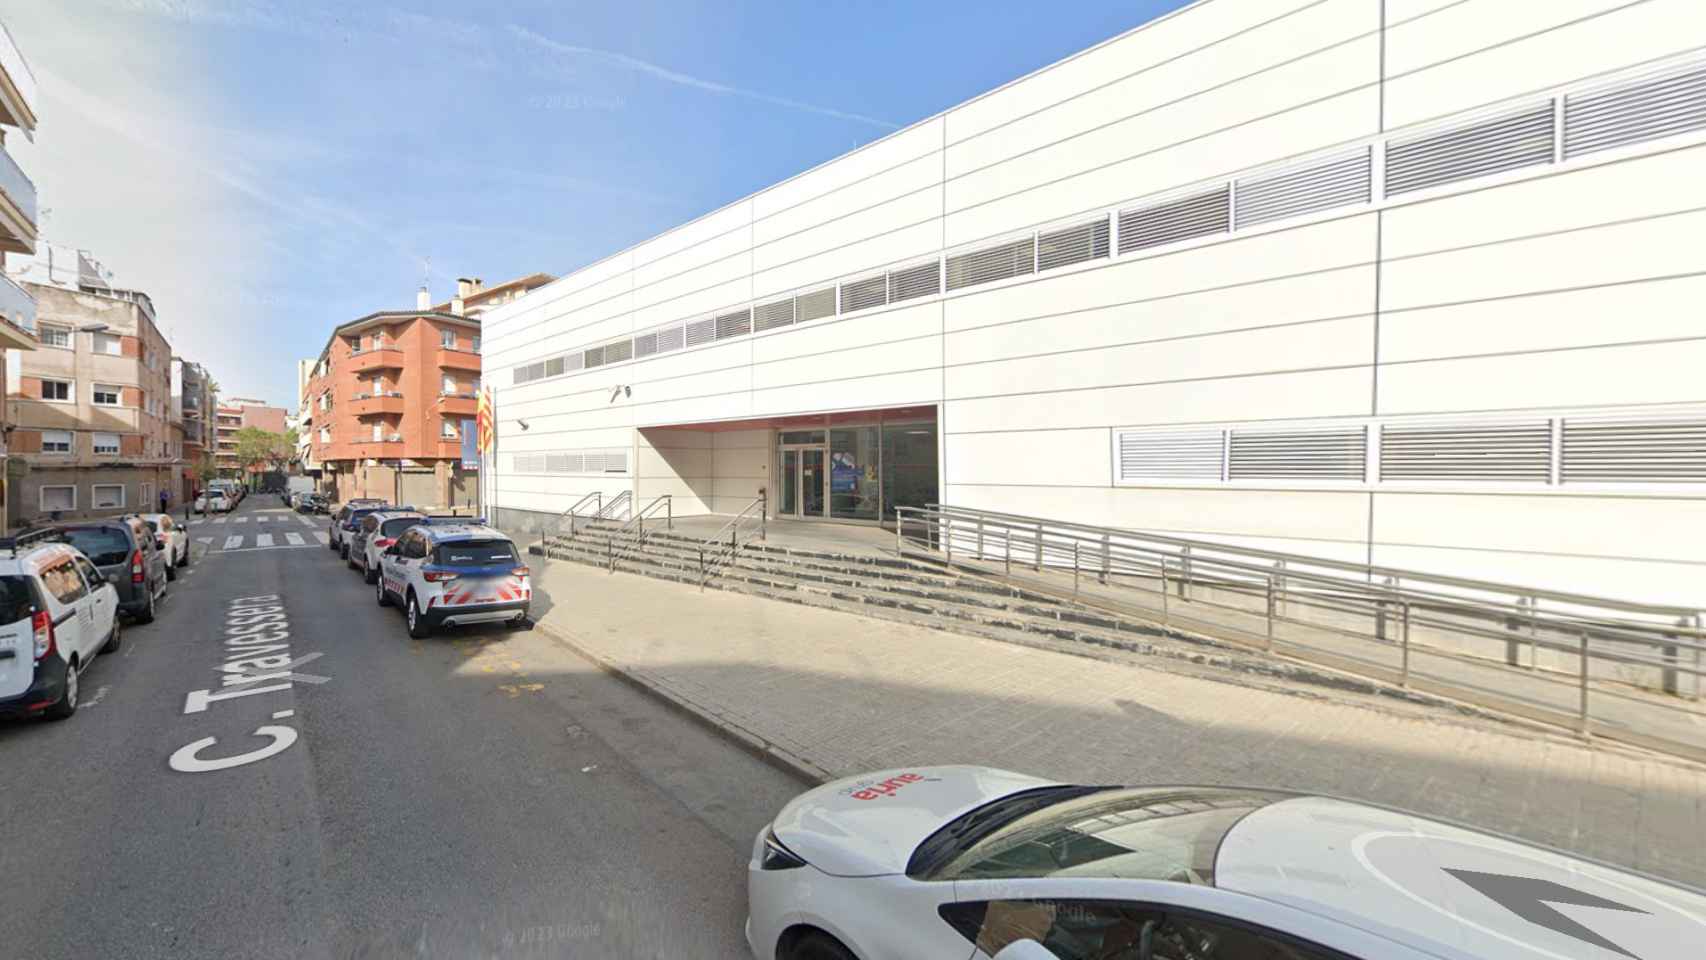 Comisaría de Mossos d'Esquadra de Cornellà de Llobregat